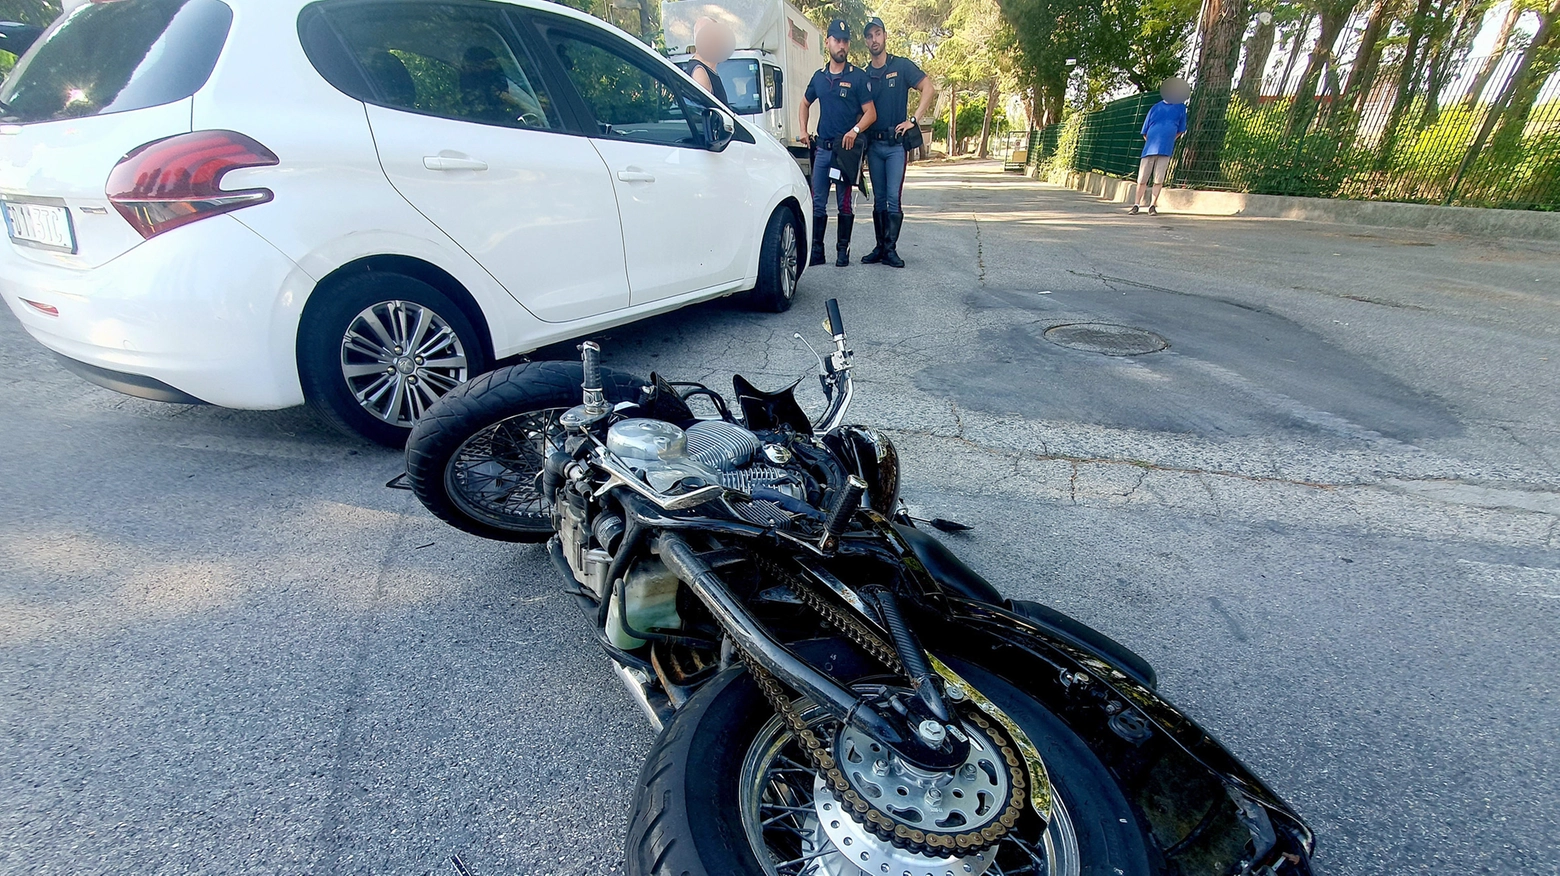 Incidente stradale via Marecchiese tra un'auto Peugeot e una moto Honda shadow (foto Migliorini)